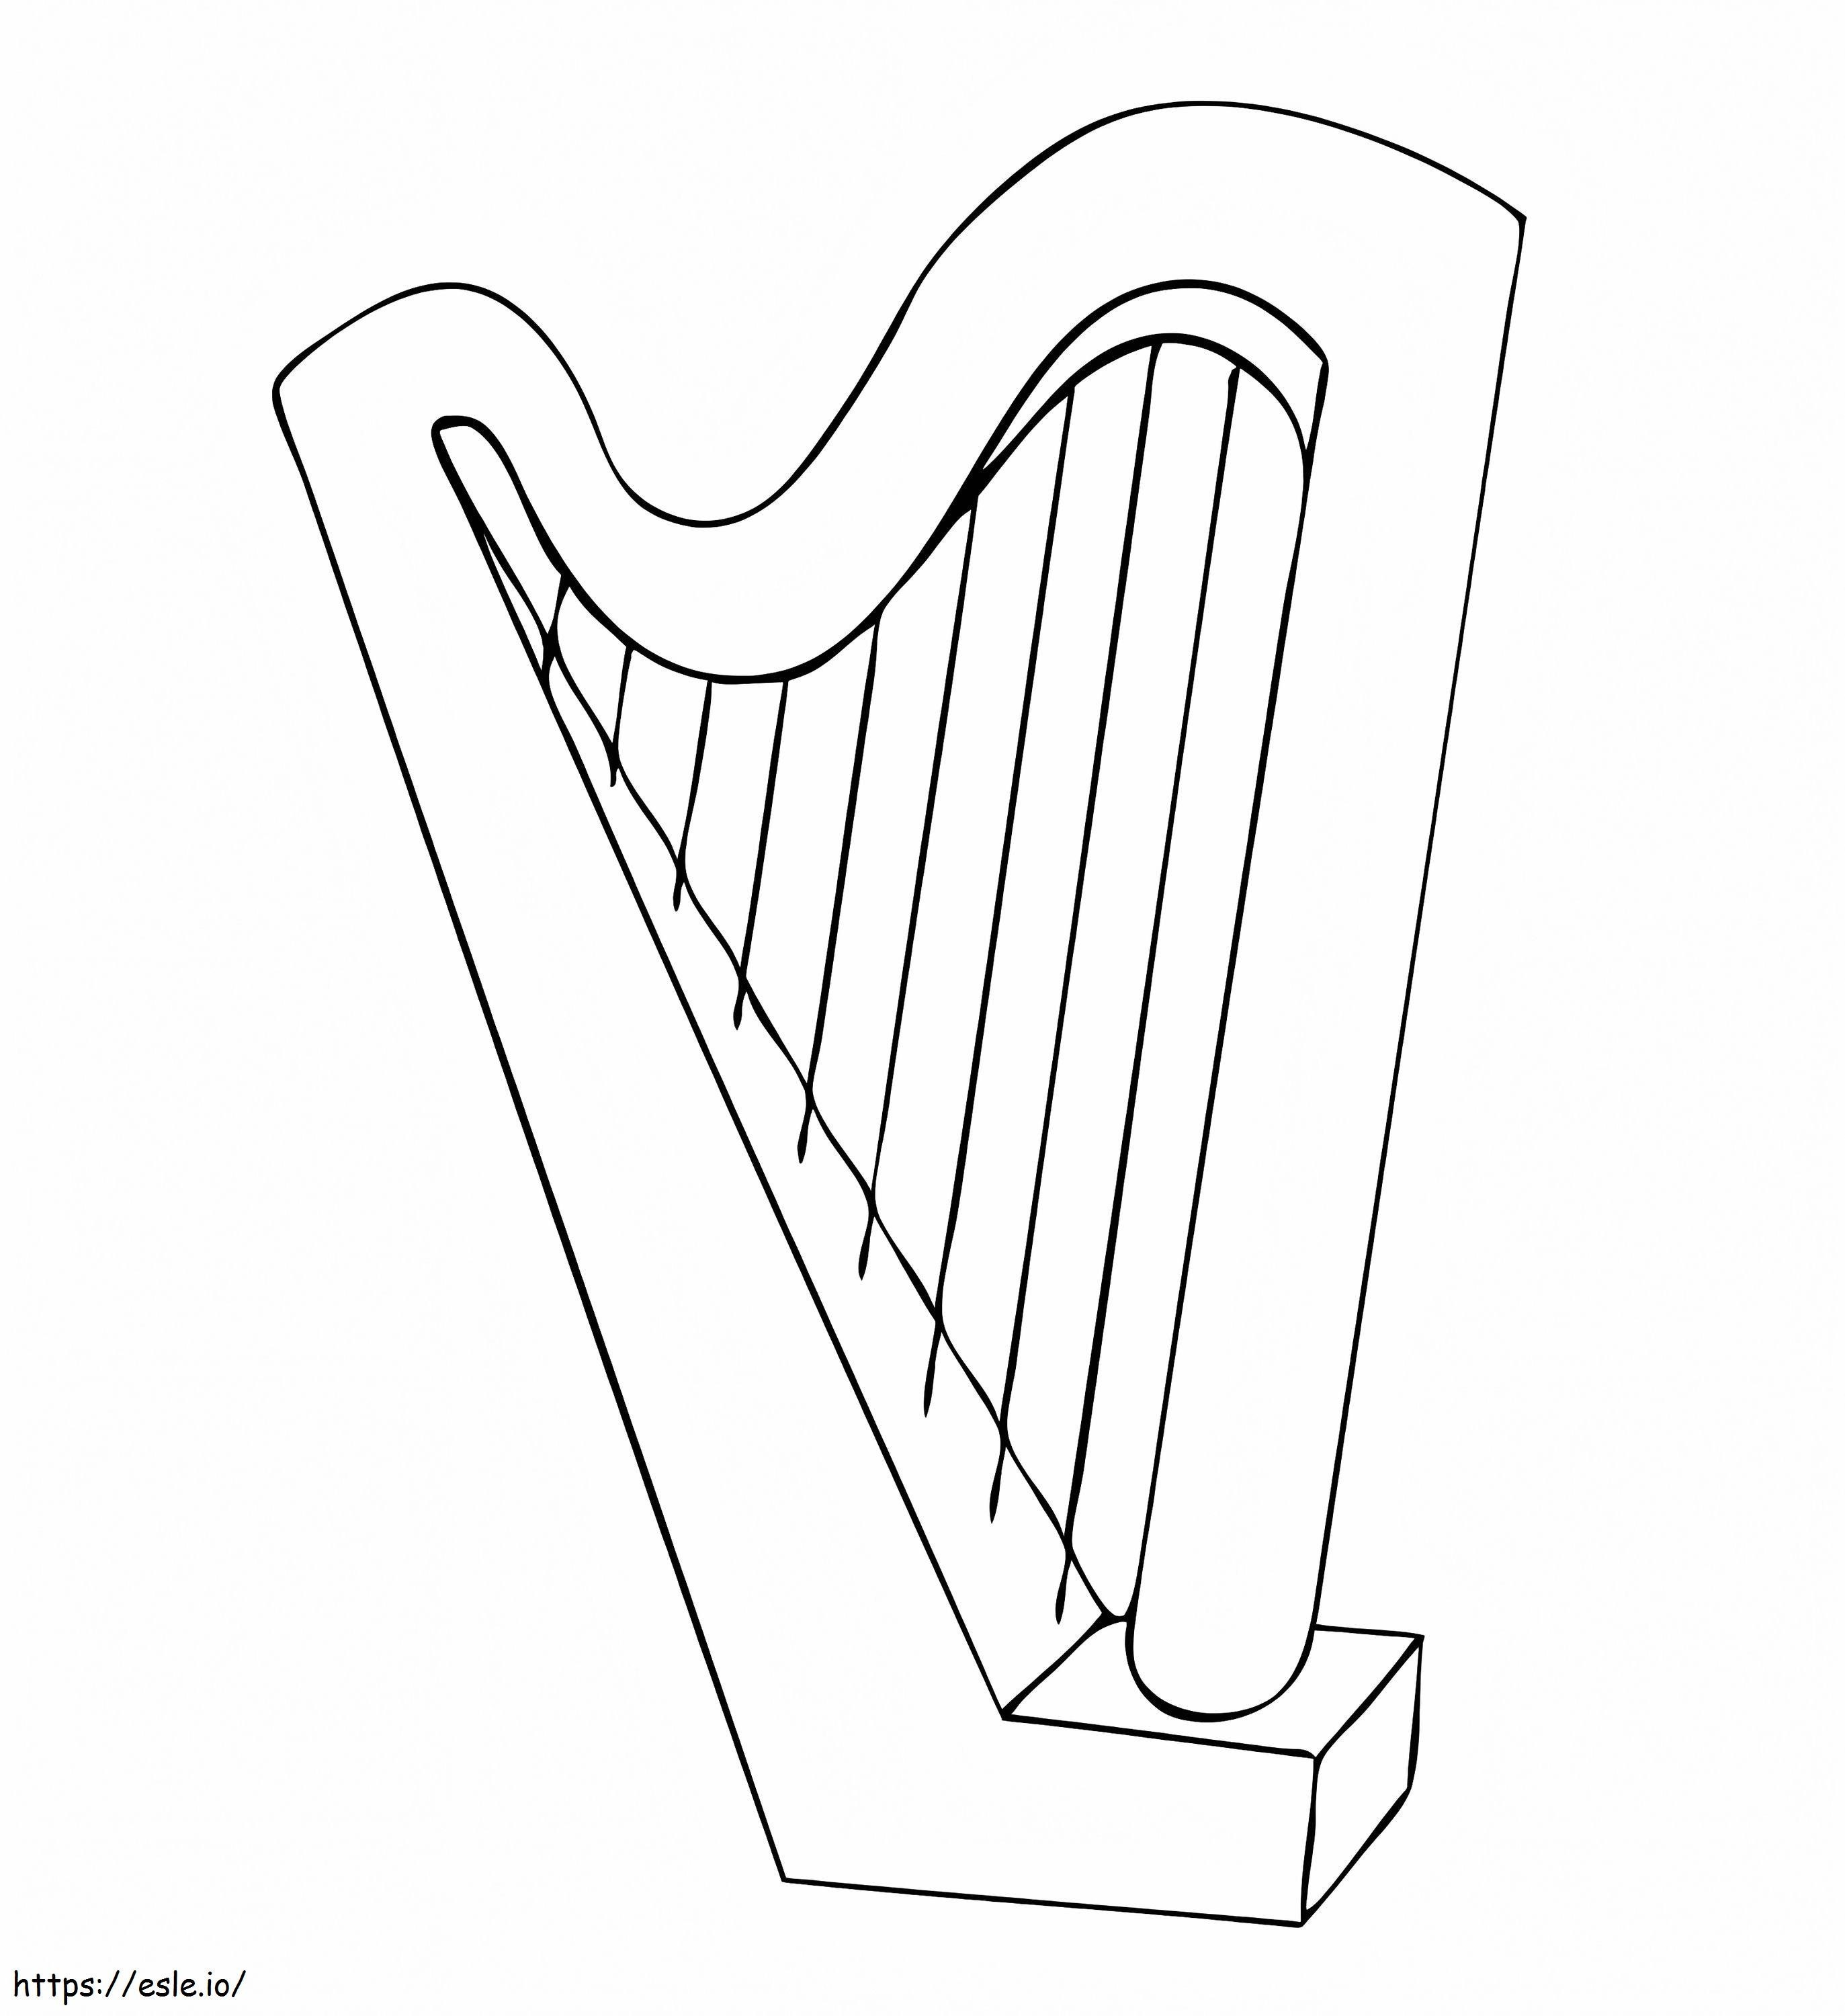 Einfache Harfe ausmalbilder